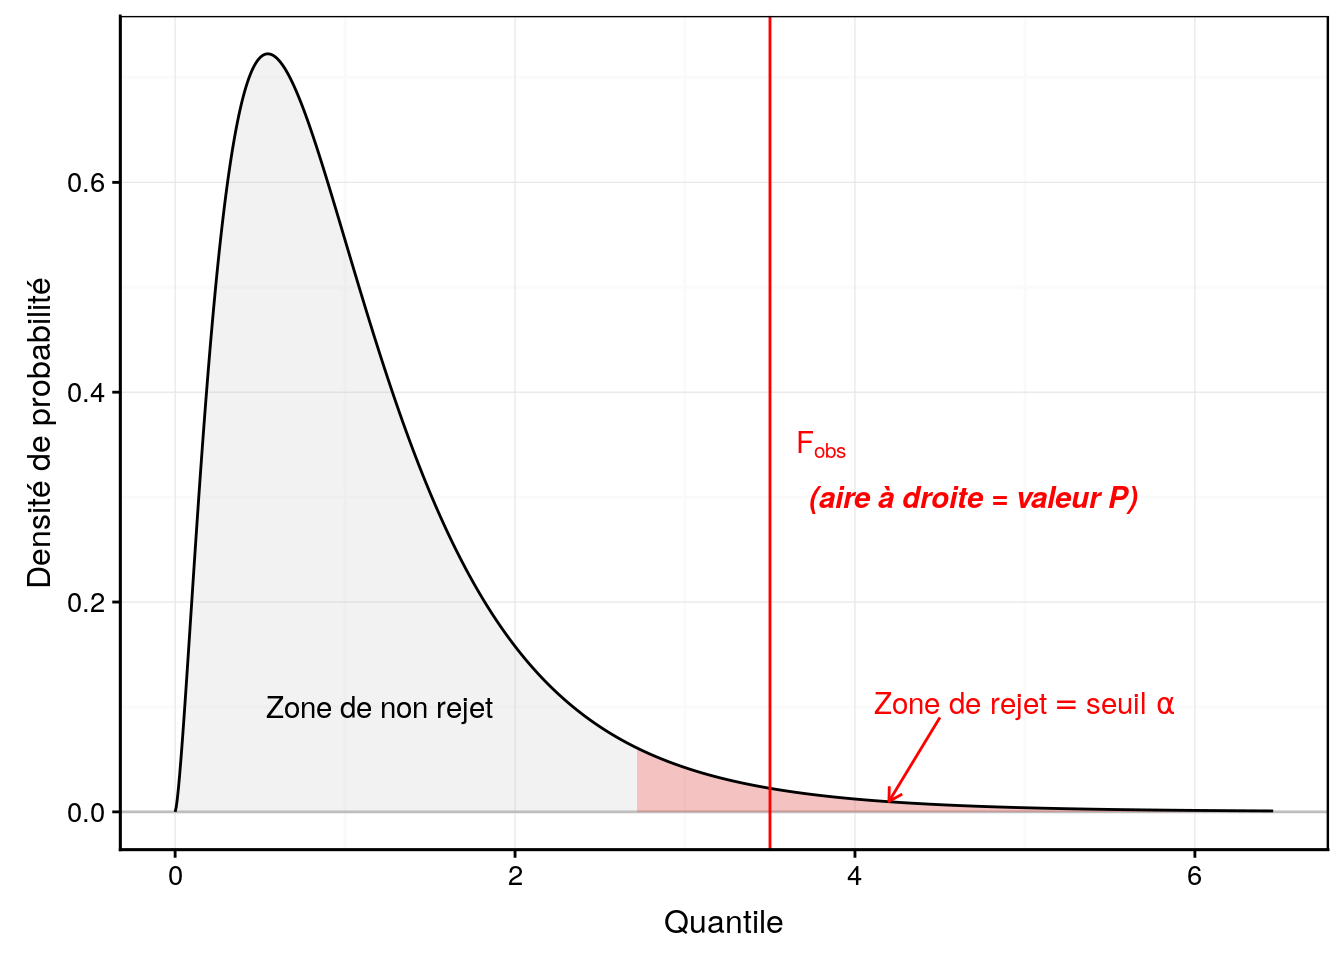 Allure typique de la densité de probabilité de la distribution F (ici ddl inter = 5 et ddl intra = 20). Plus *F~obs* est grand, plus l'hypothèse nulle est suspecte. La zone de rejet est donc positionnée à droite (en rouge).